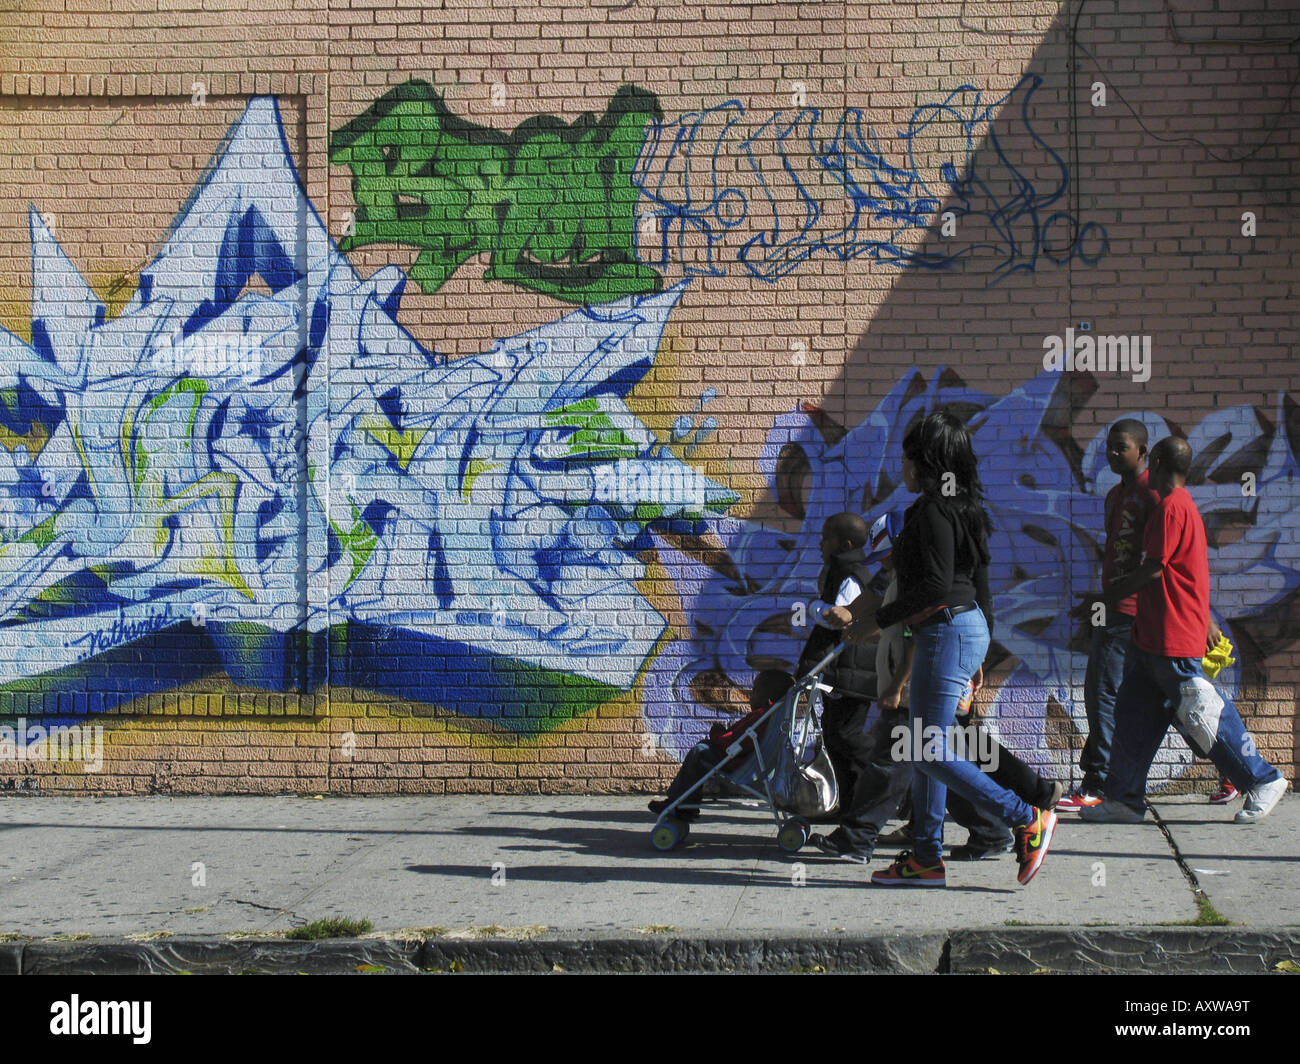 Les piétons en face de mur avec des graffitis colorés, Etats Unis, Bronx, New York Banque D'Images